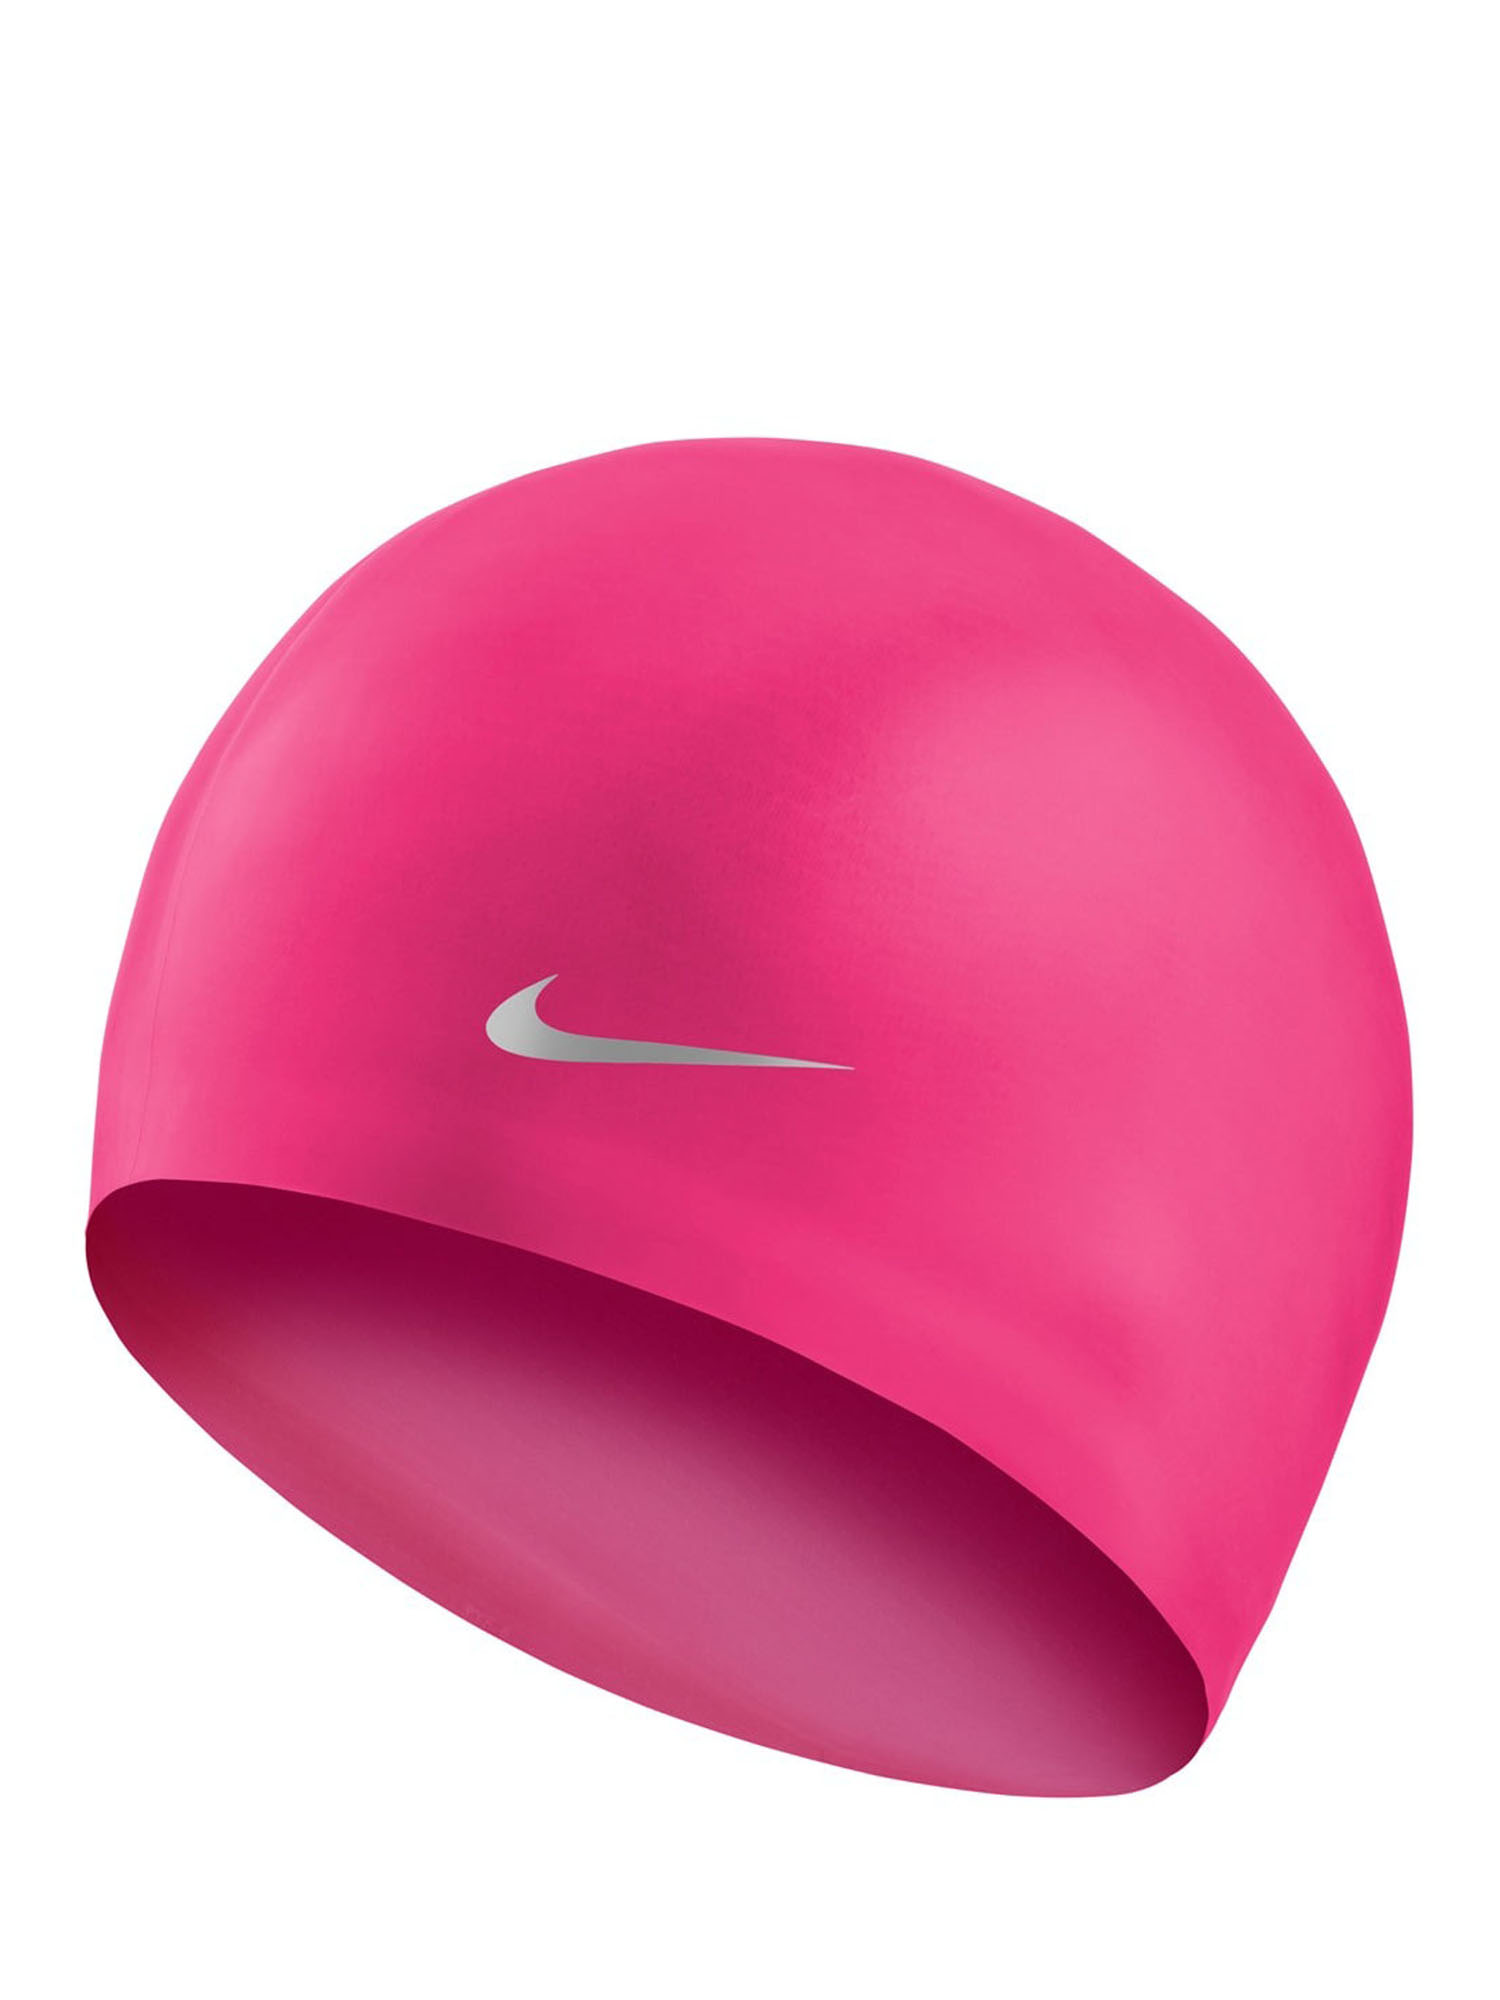 Шапочка Для Плавания Nike Solid Silicon розовый